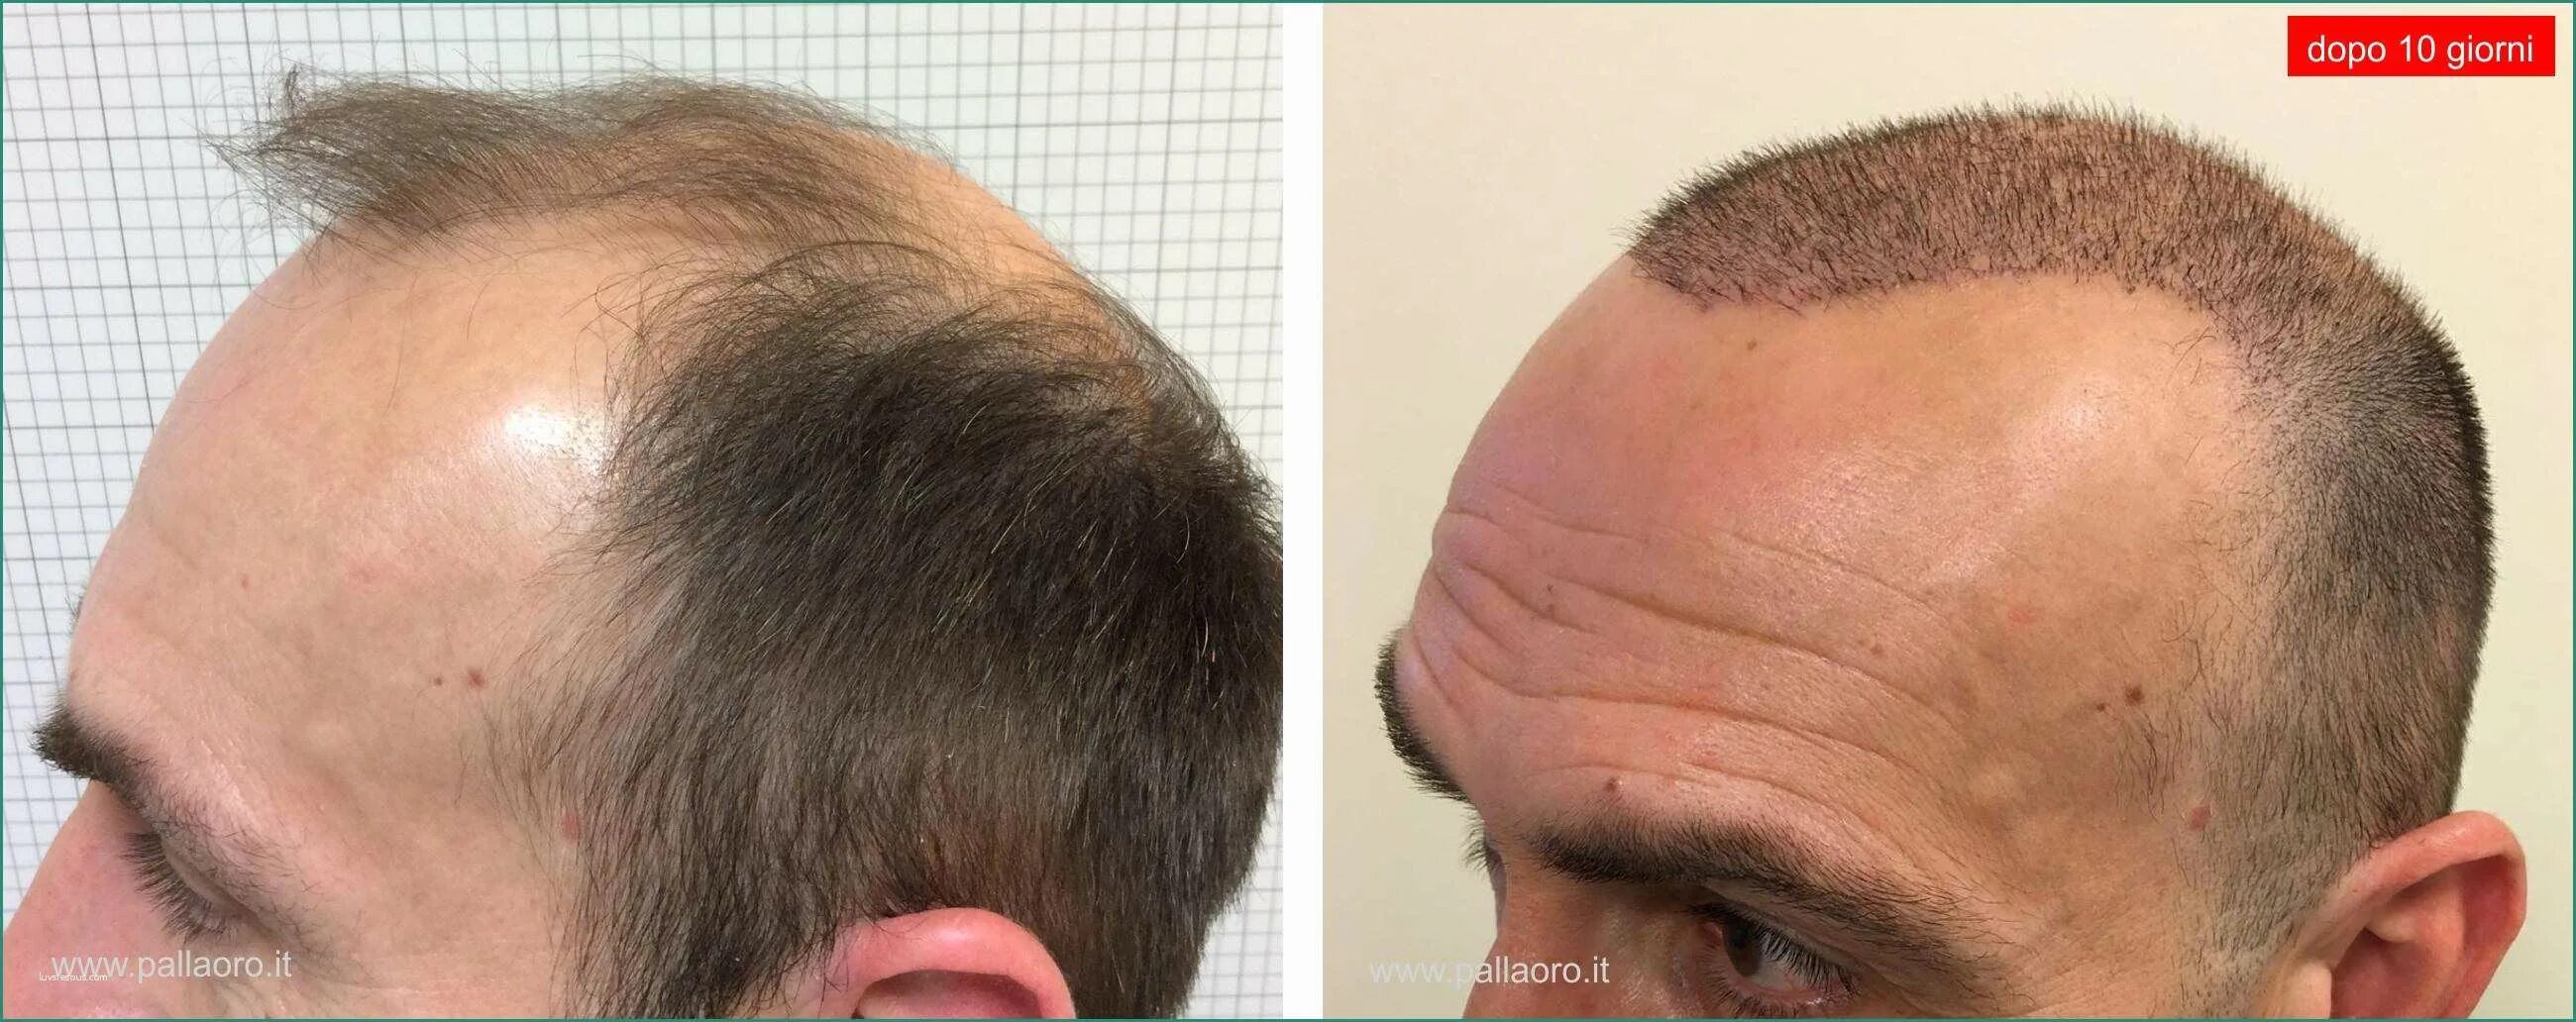 Форум после пересадки. Шрамы от пересадки волос. Трансплантация волос на шрам. Голова после пересадки волос.